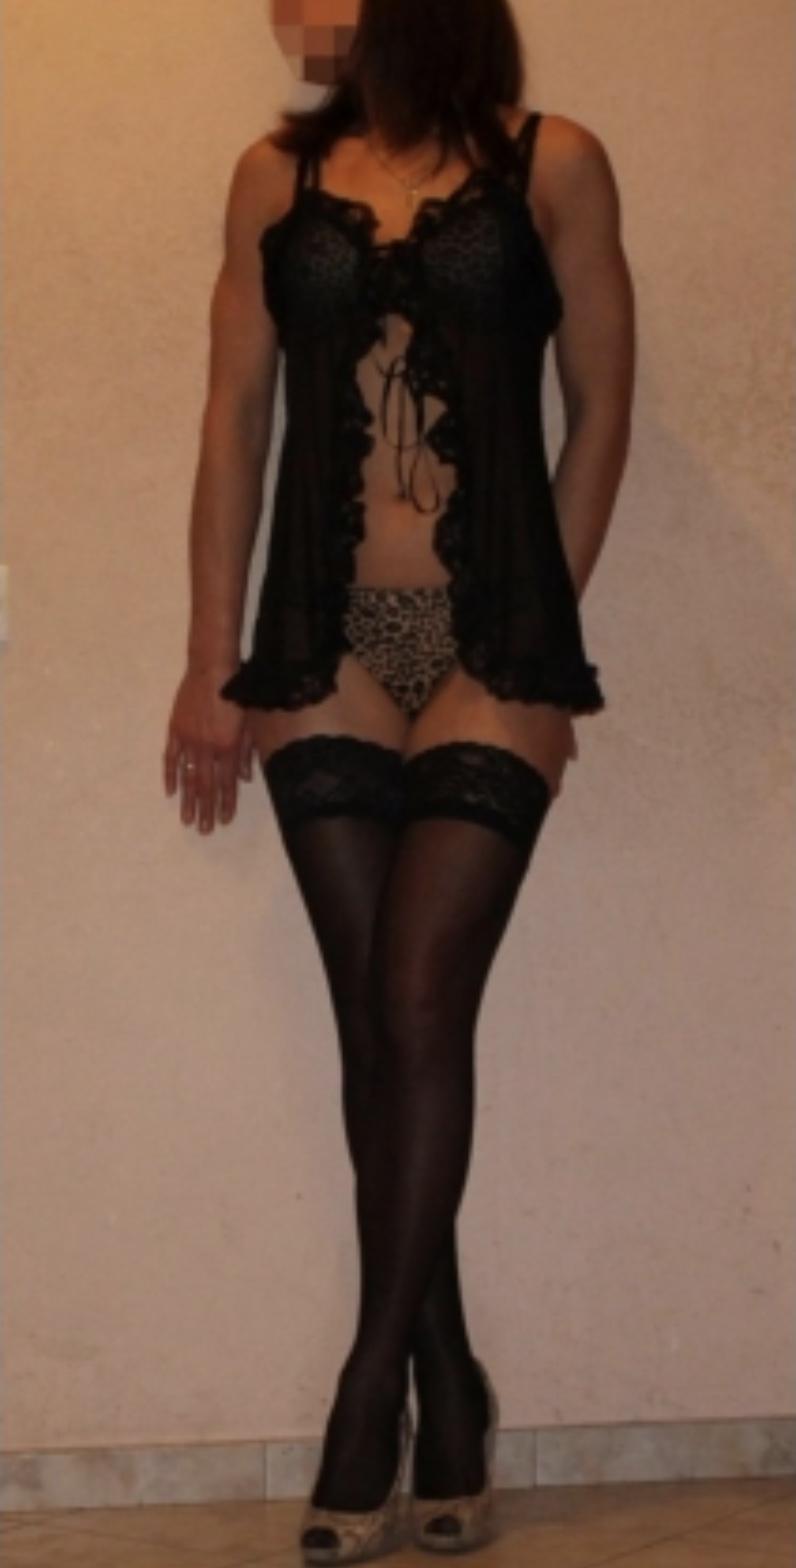 Проститутка Лиза, фото 2, тел: 0685572020. В центре города - Киев